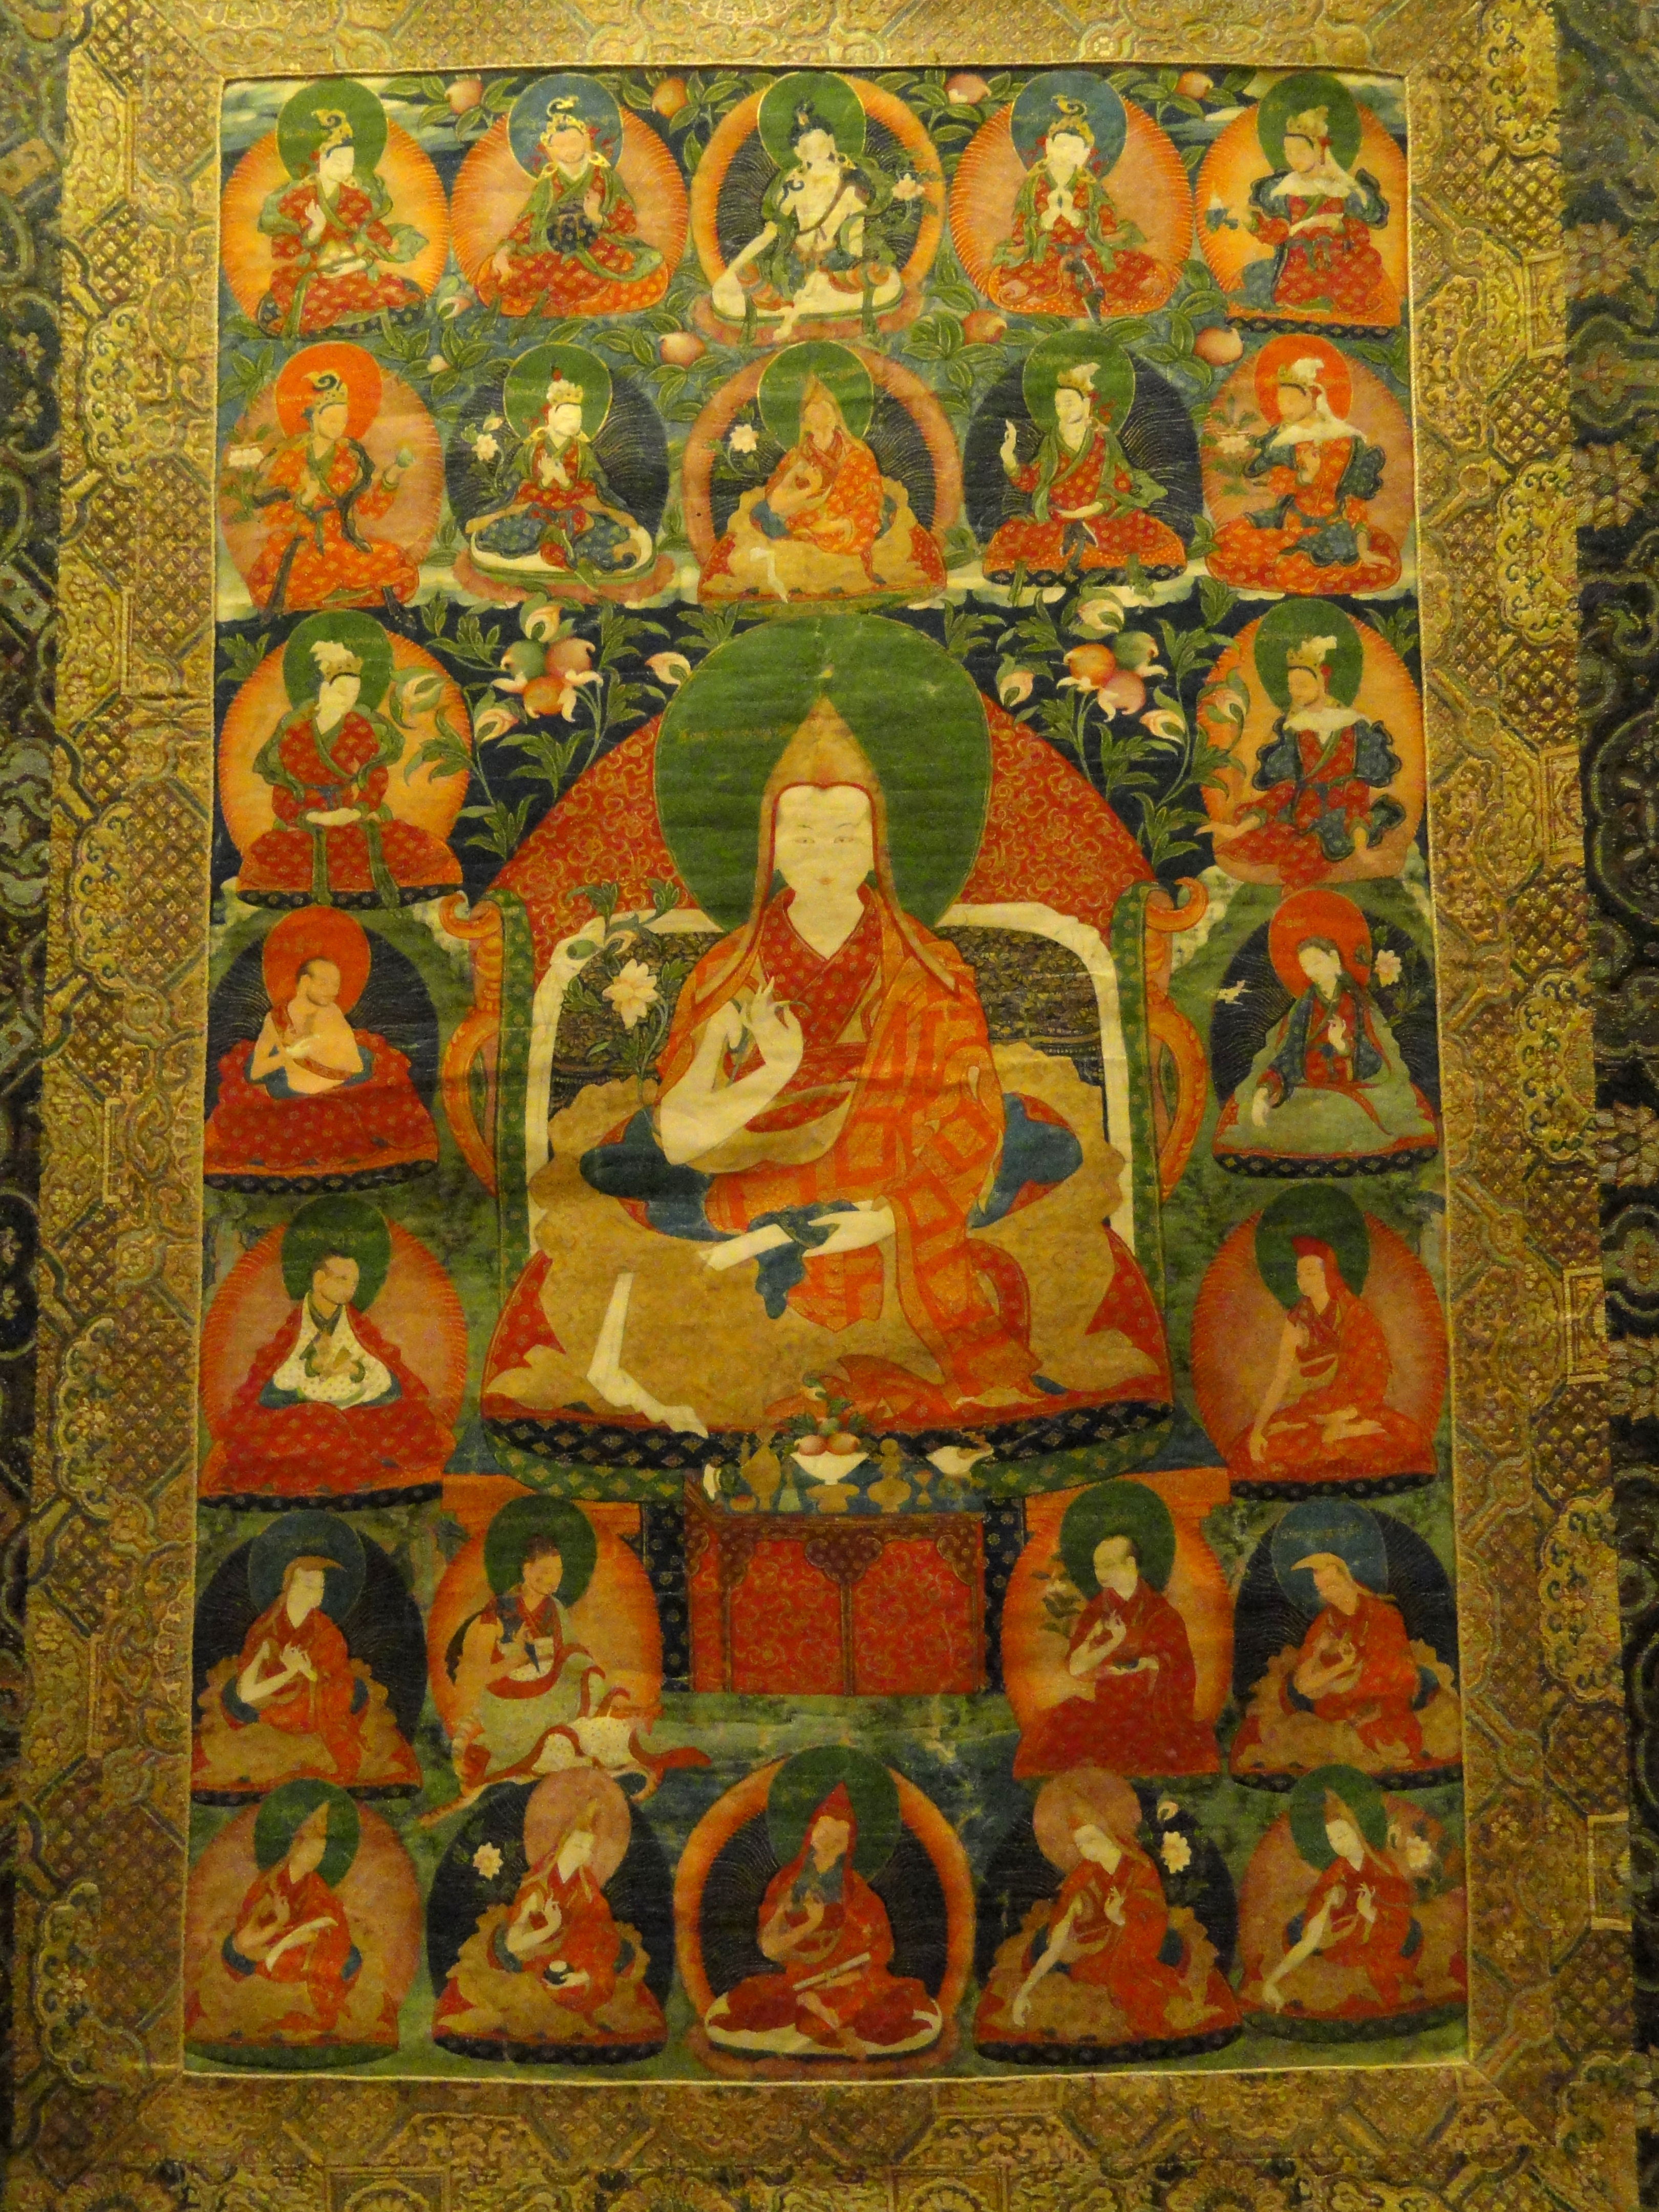 Jamphel Gyatso (8th Dalai Lama)